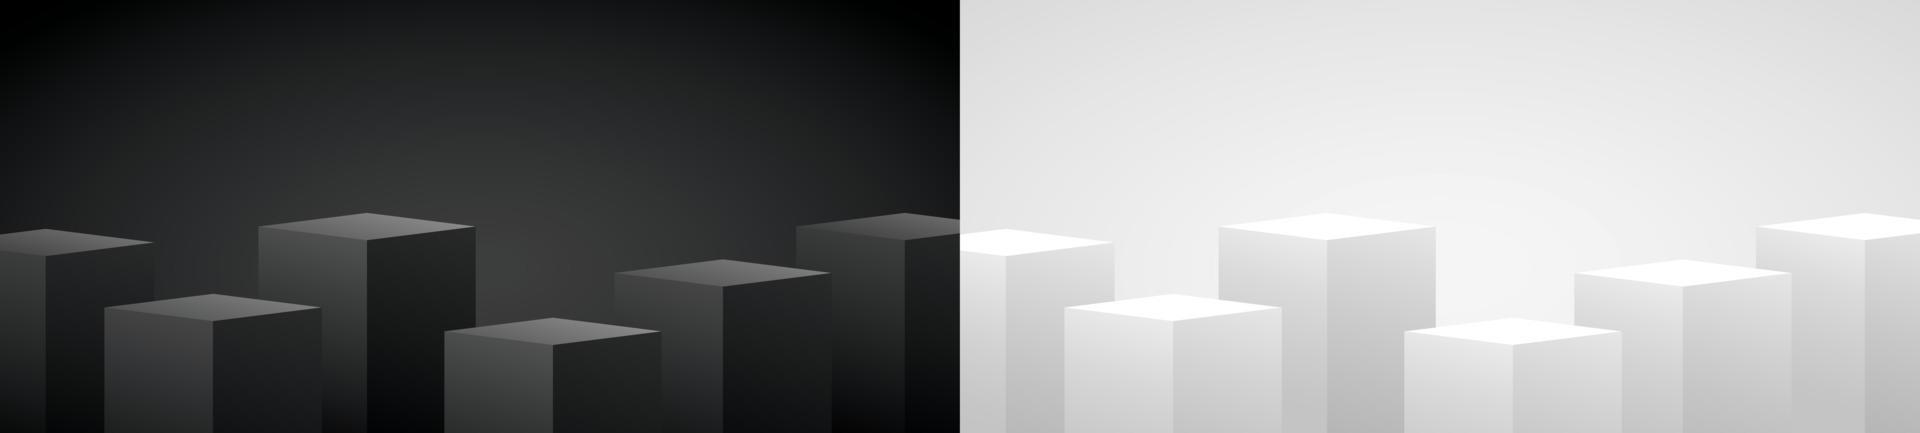 fundo de exibição de pódio geométrico preto e branco legal design minimalista vetor de ilustração 3d